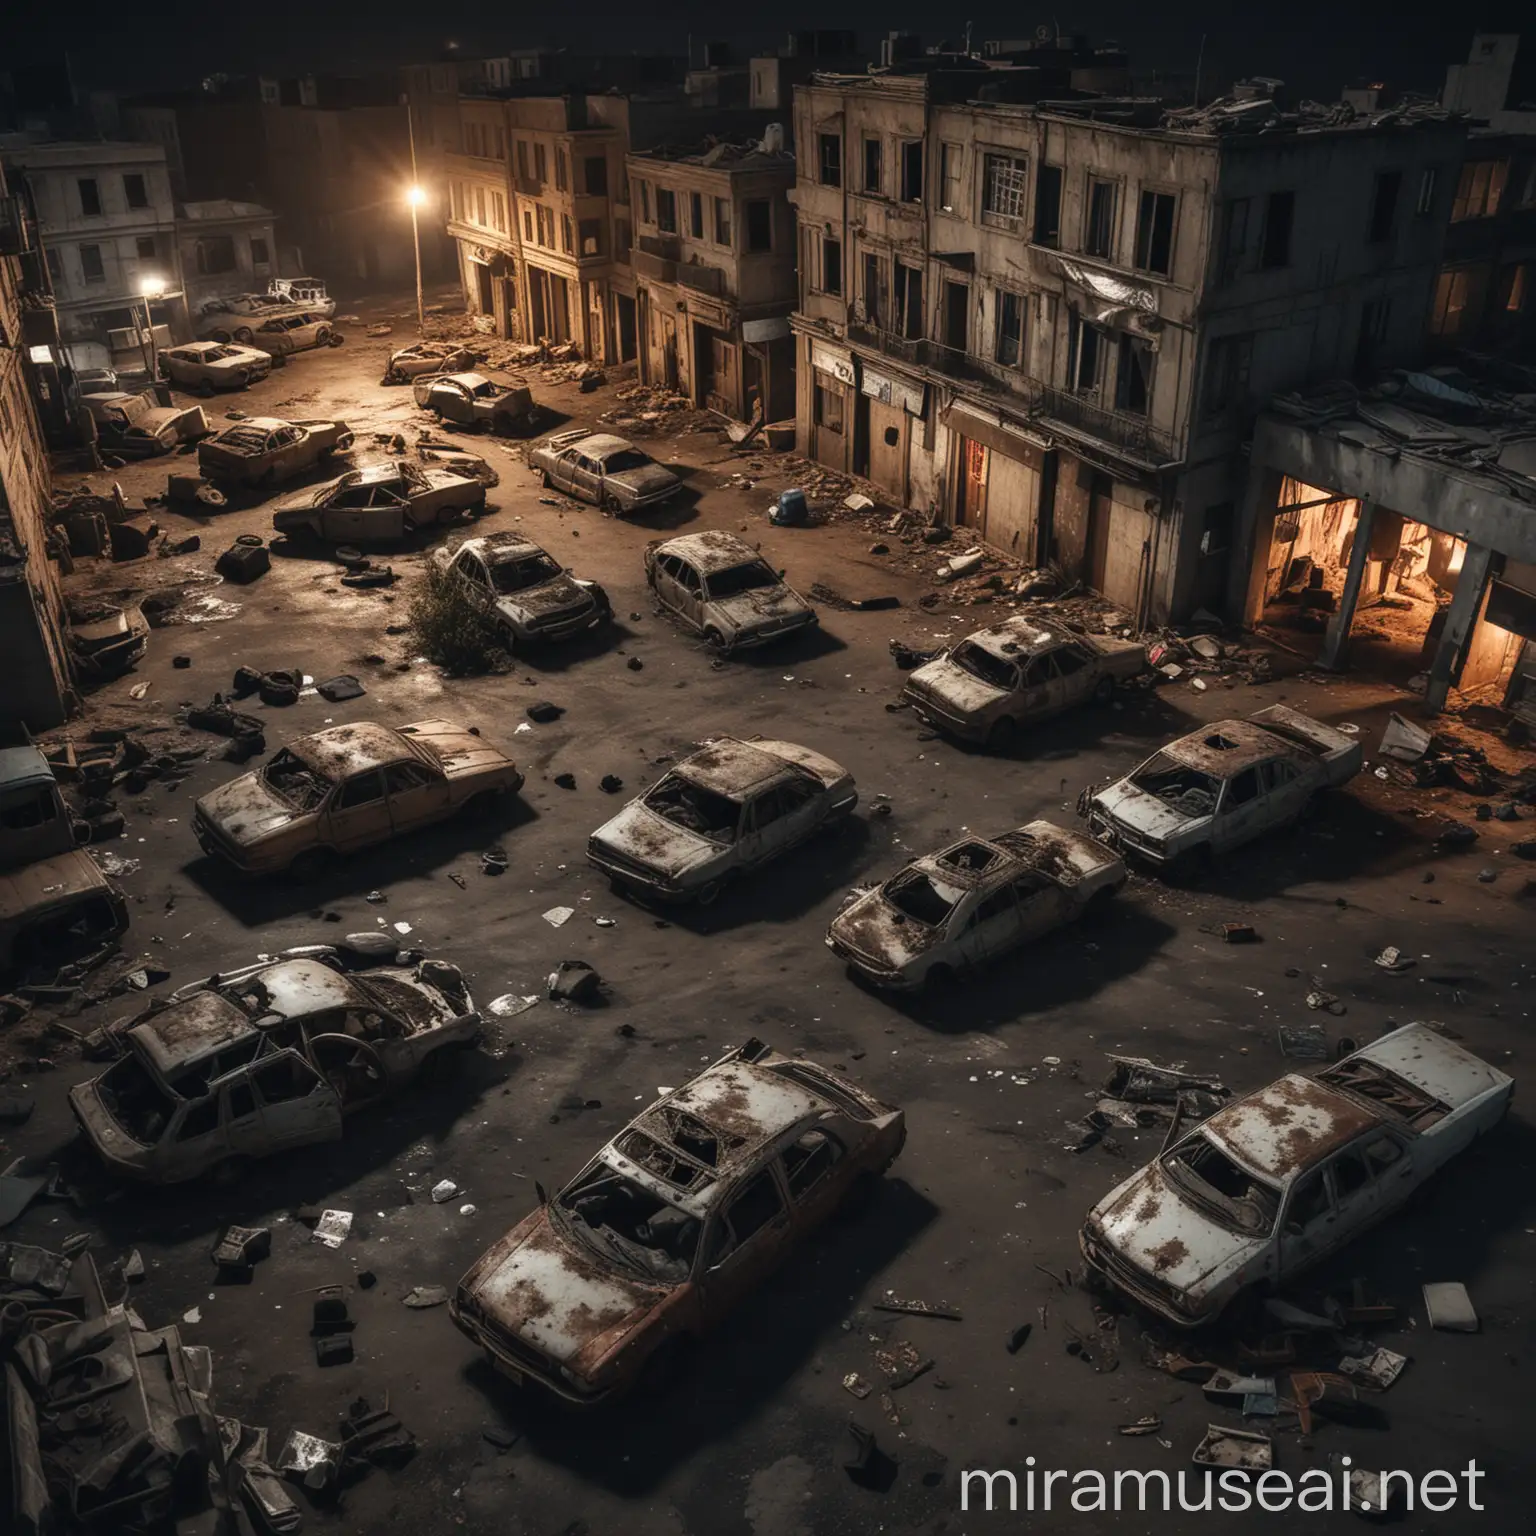 cidade abandonada com carros quebrados e corpos no chão com aspecto de jogo de terror á noite